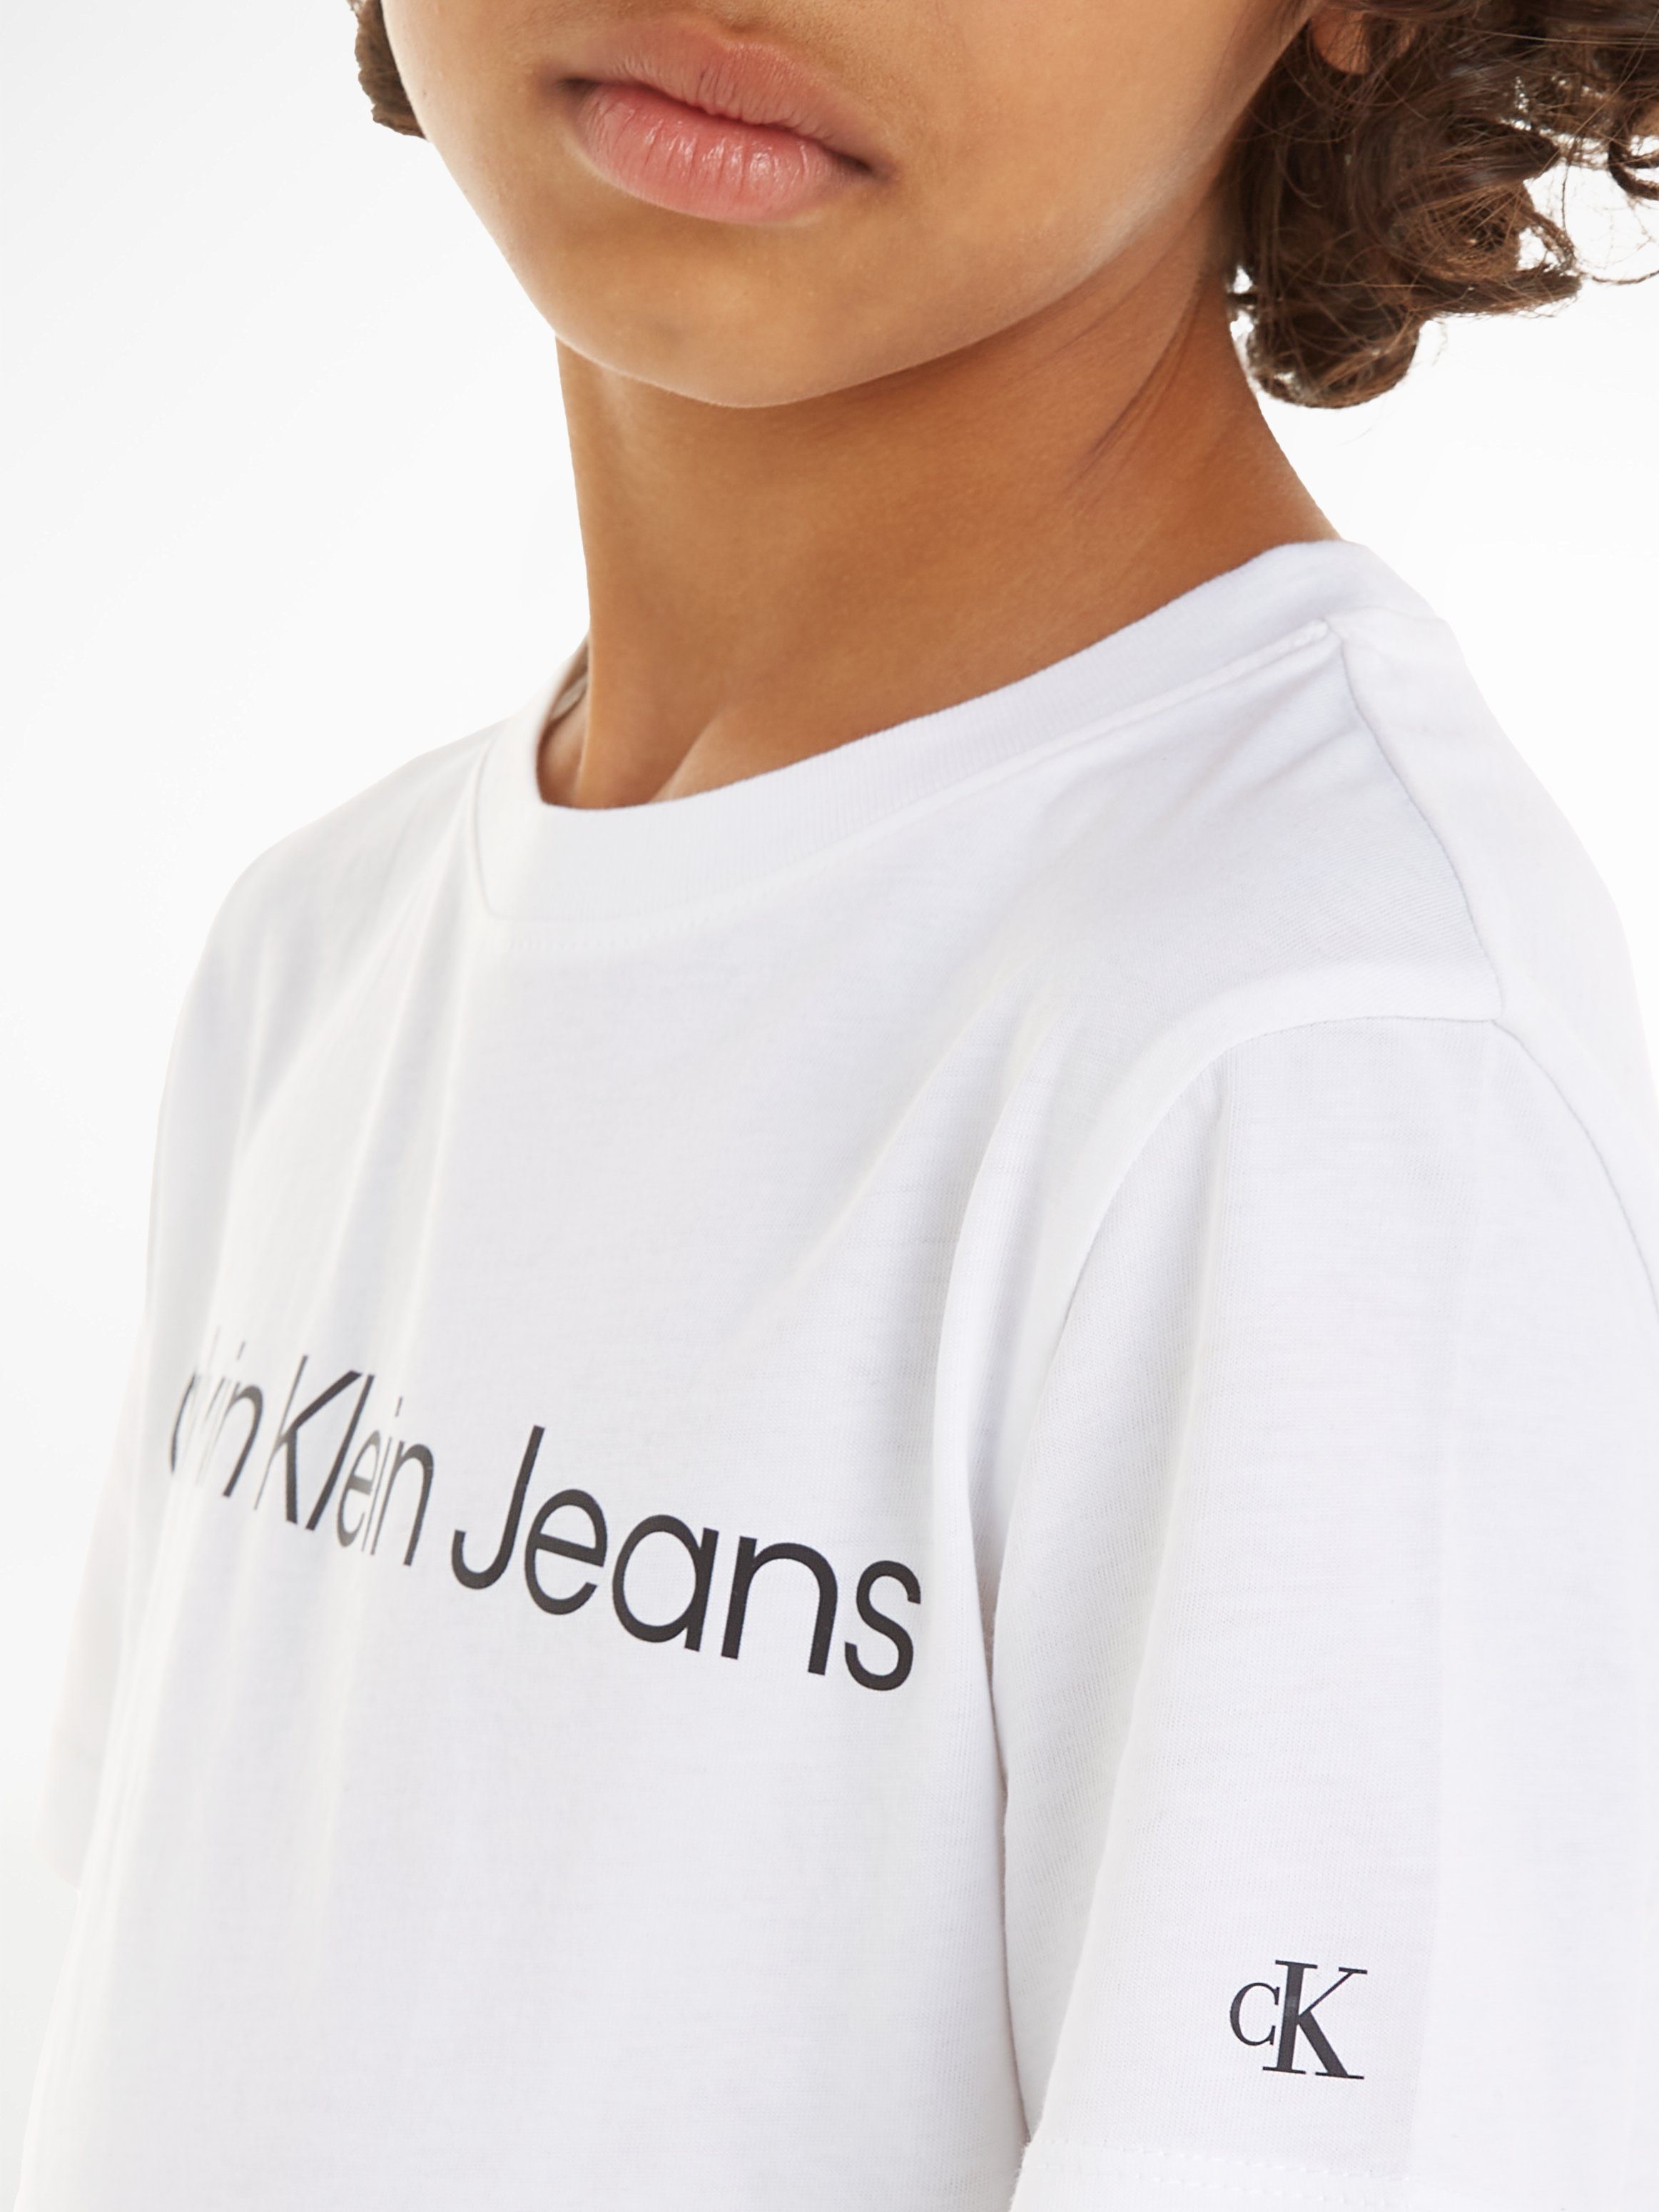 INST. SS mit Bright Calvin Klein LOGO Logoschriftzug Sweatshirt T-SHIRT White Jeans